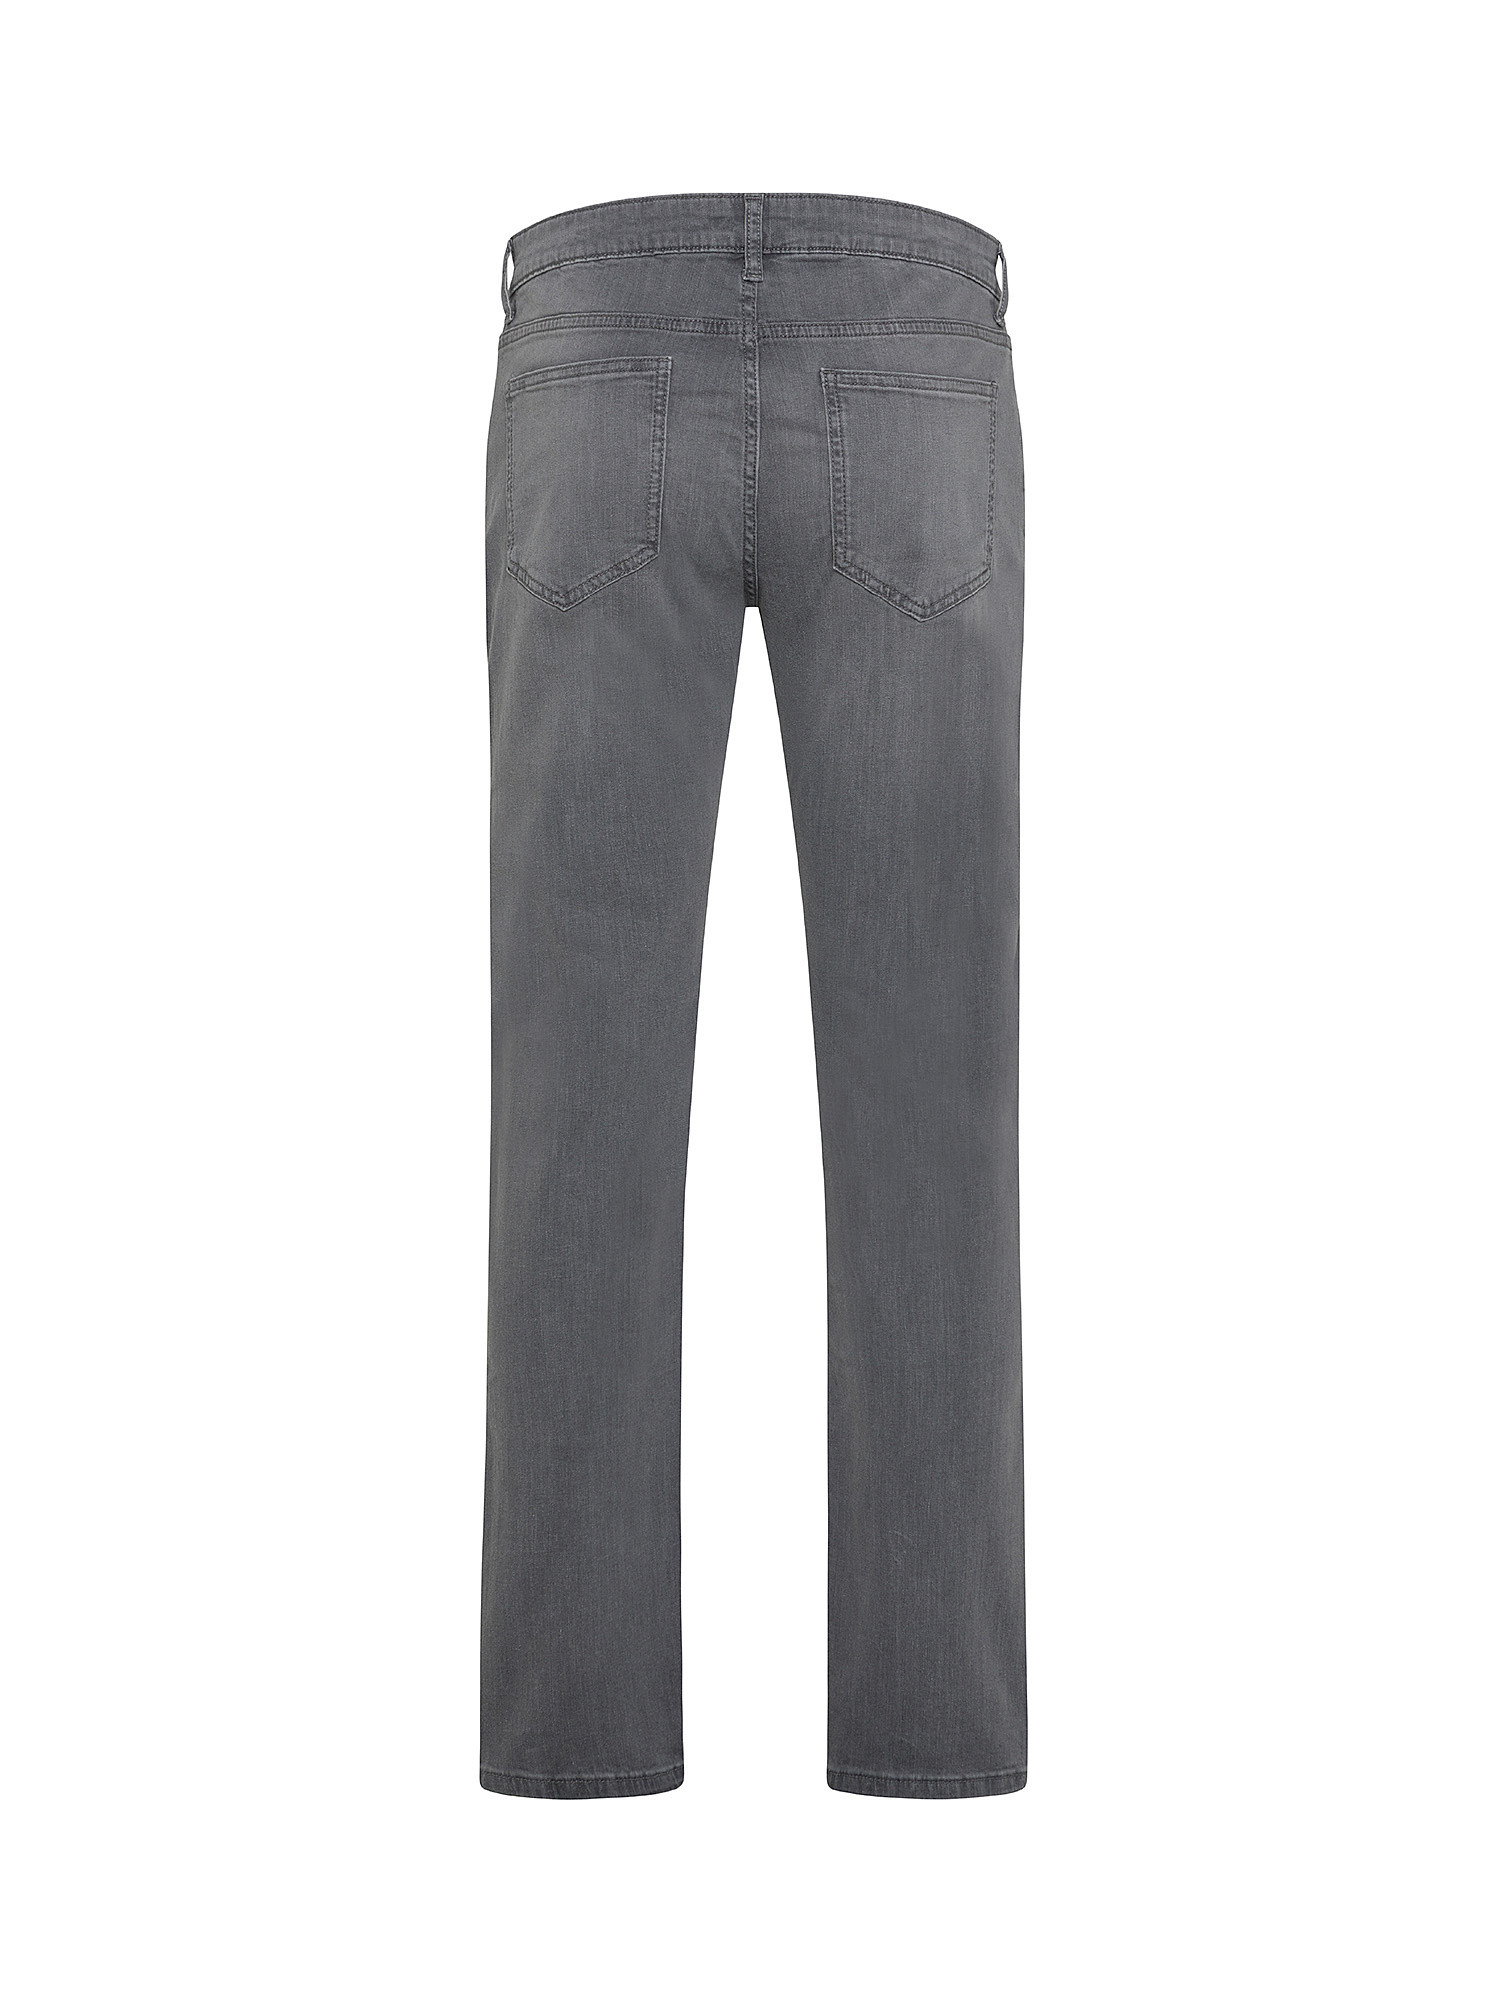 JCT - Five pocket jeans, Grey, large image number 1